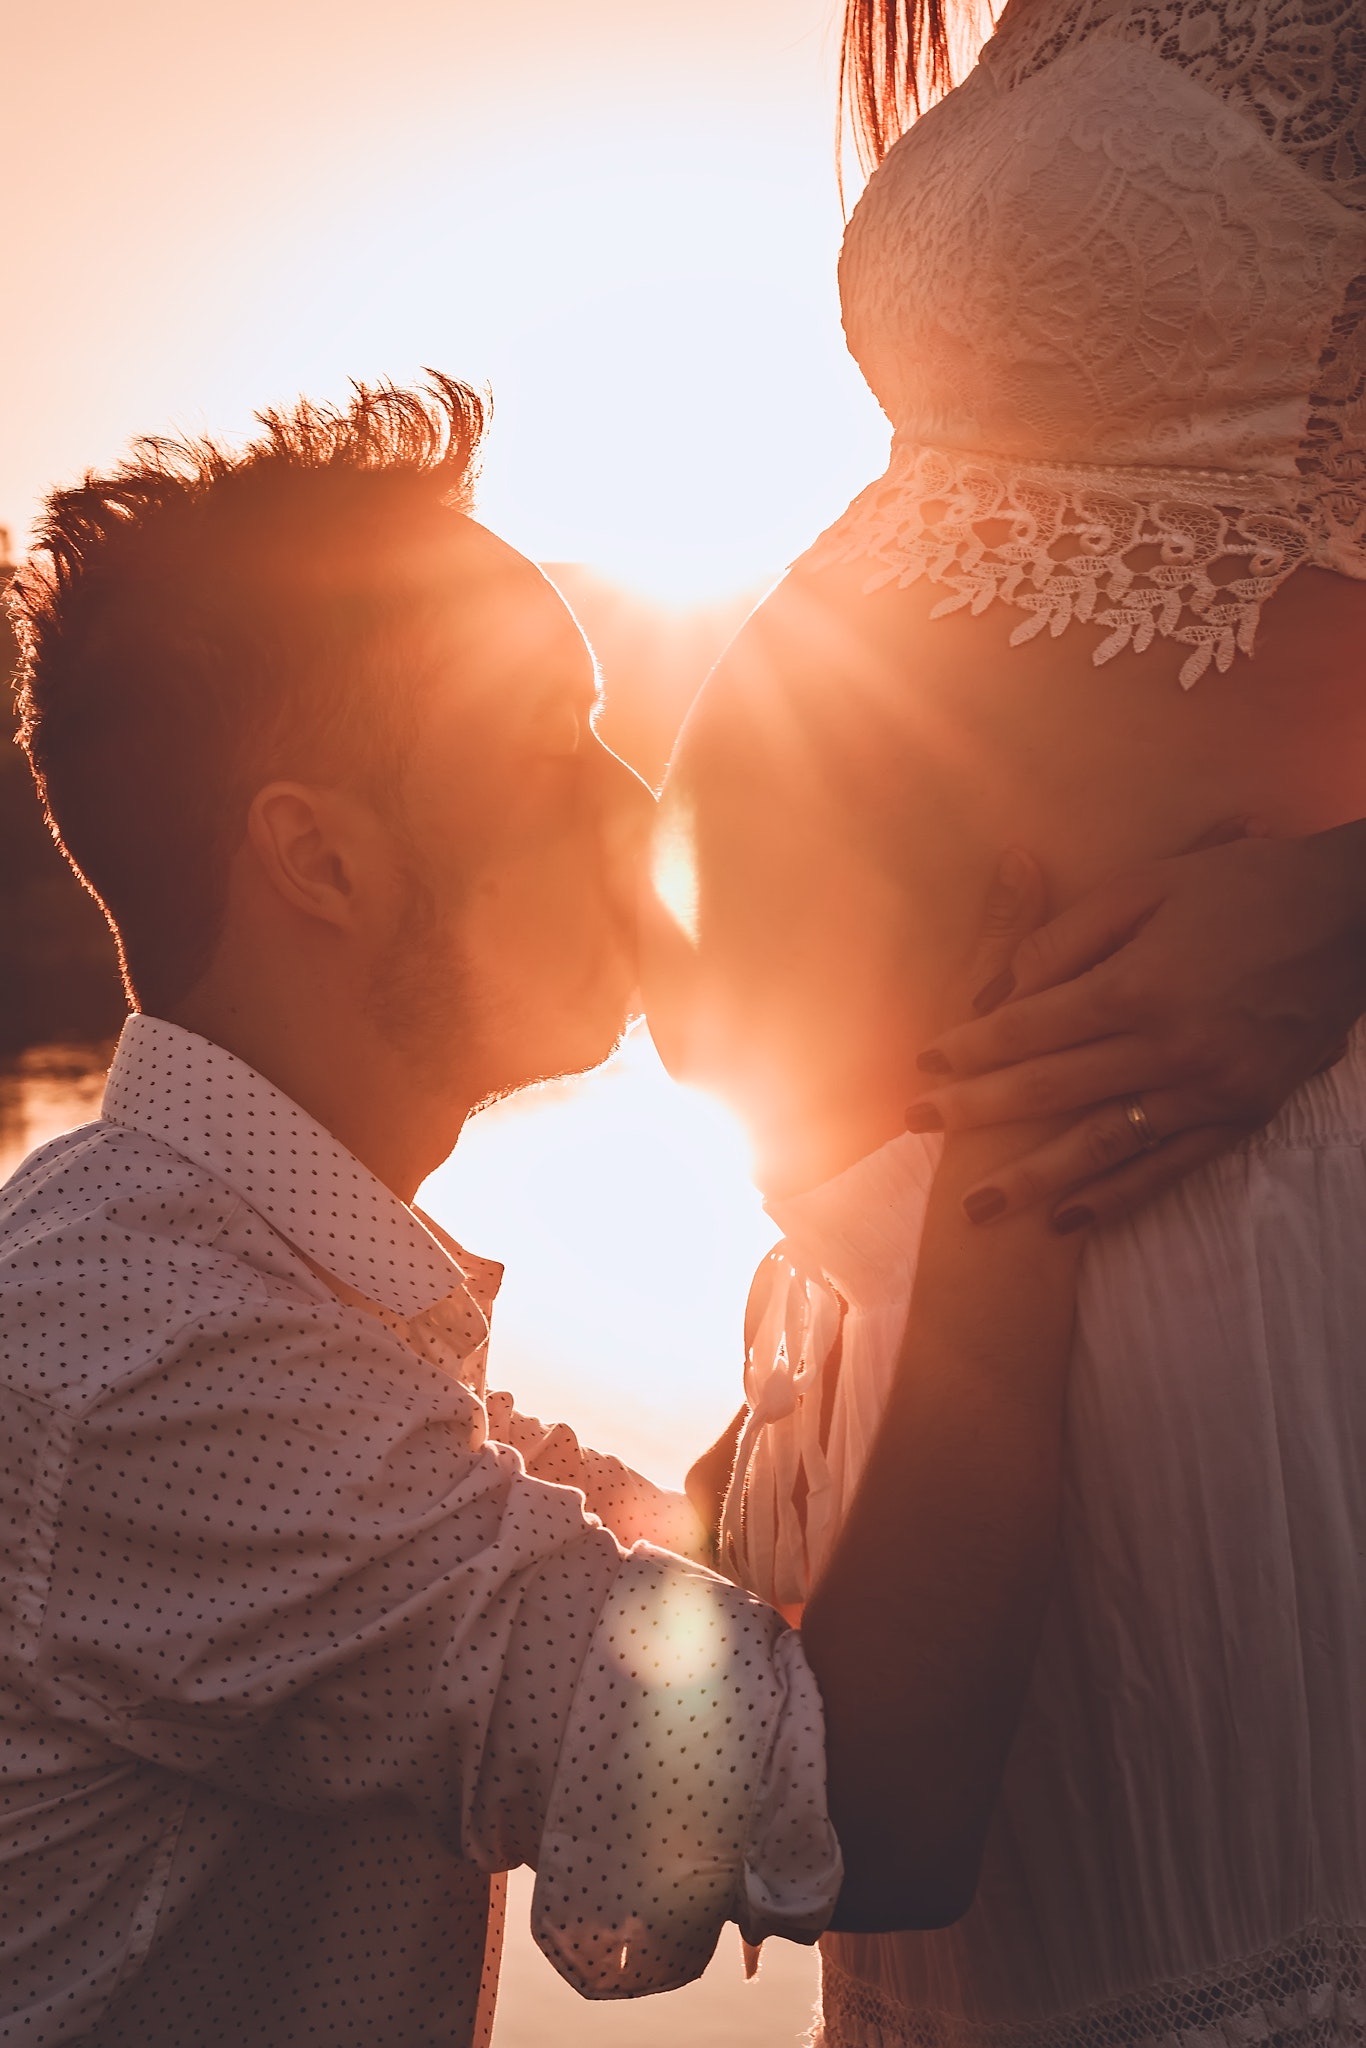 Мужчина целует жену. Мужчина и женщина любовь. Целует беременный животик. Поцелуй беременной.